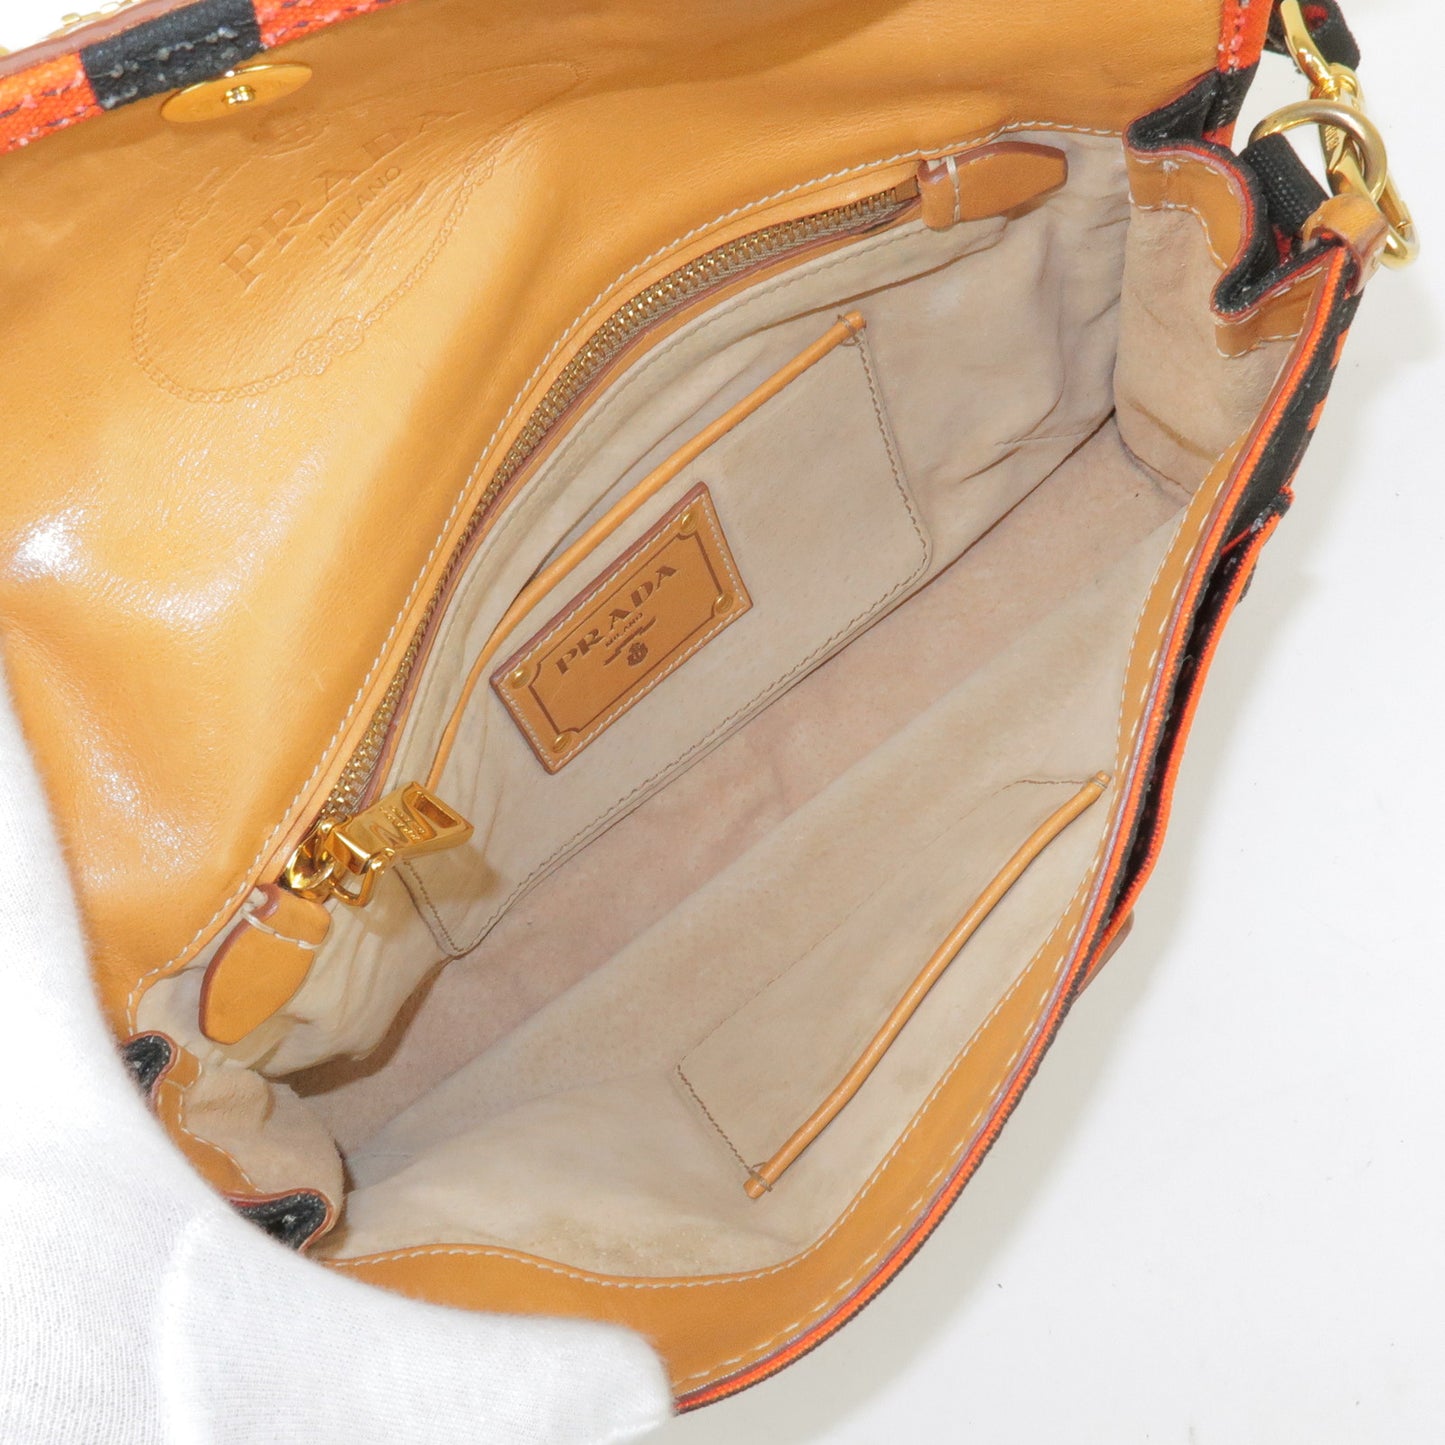 PRADA Logo Canvas Leather Shoulder Bag Hand Bag Orange Black